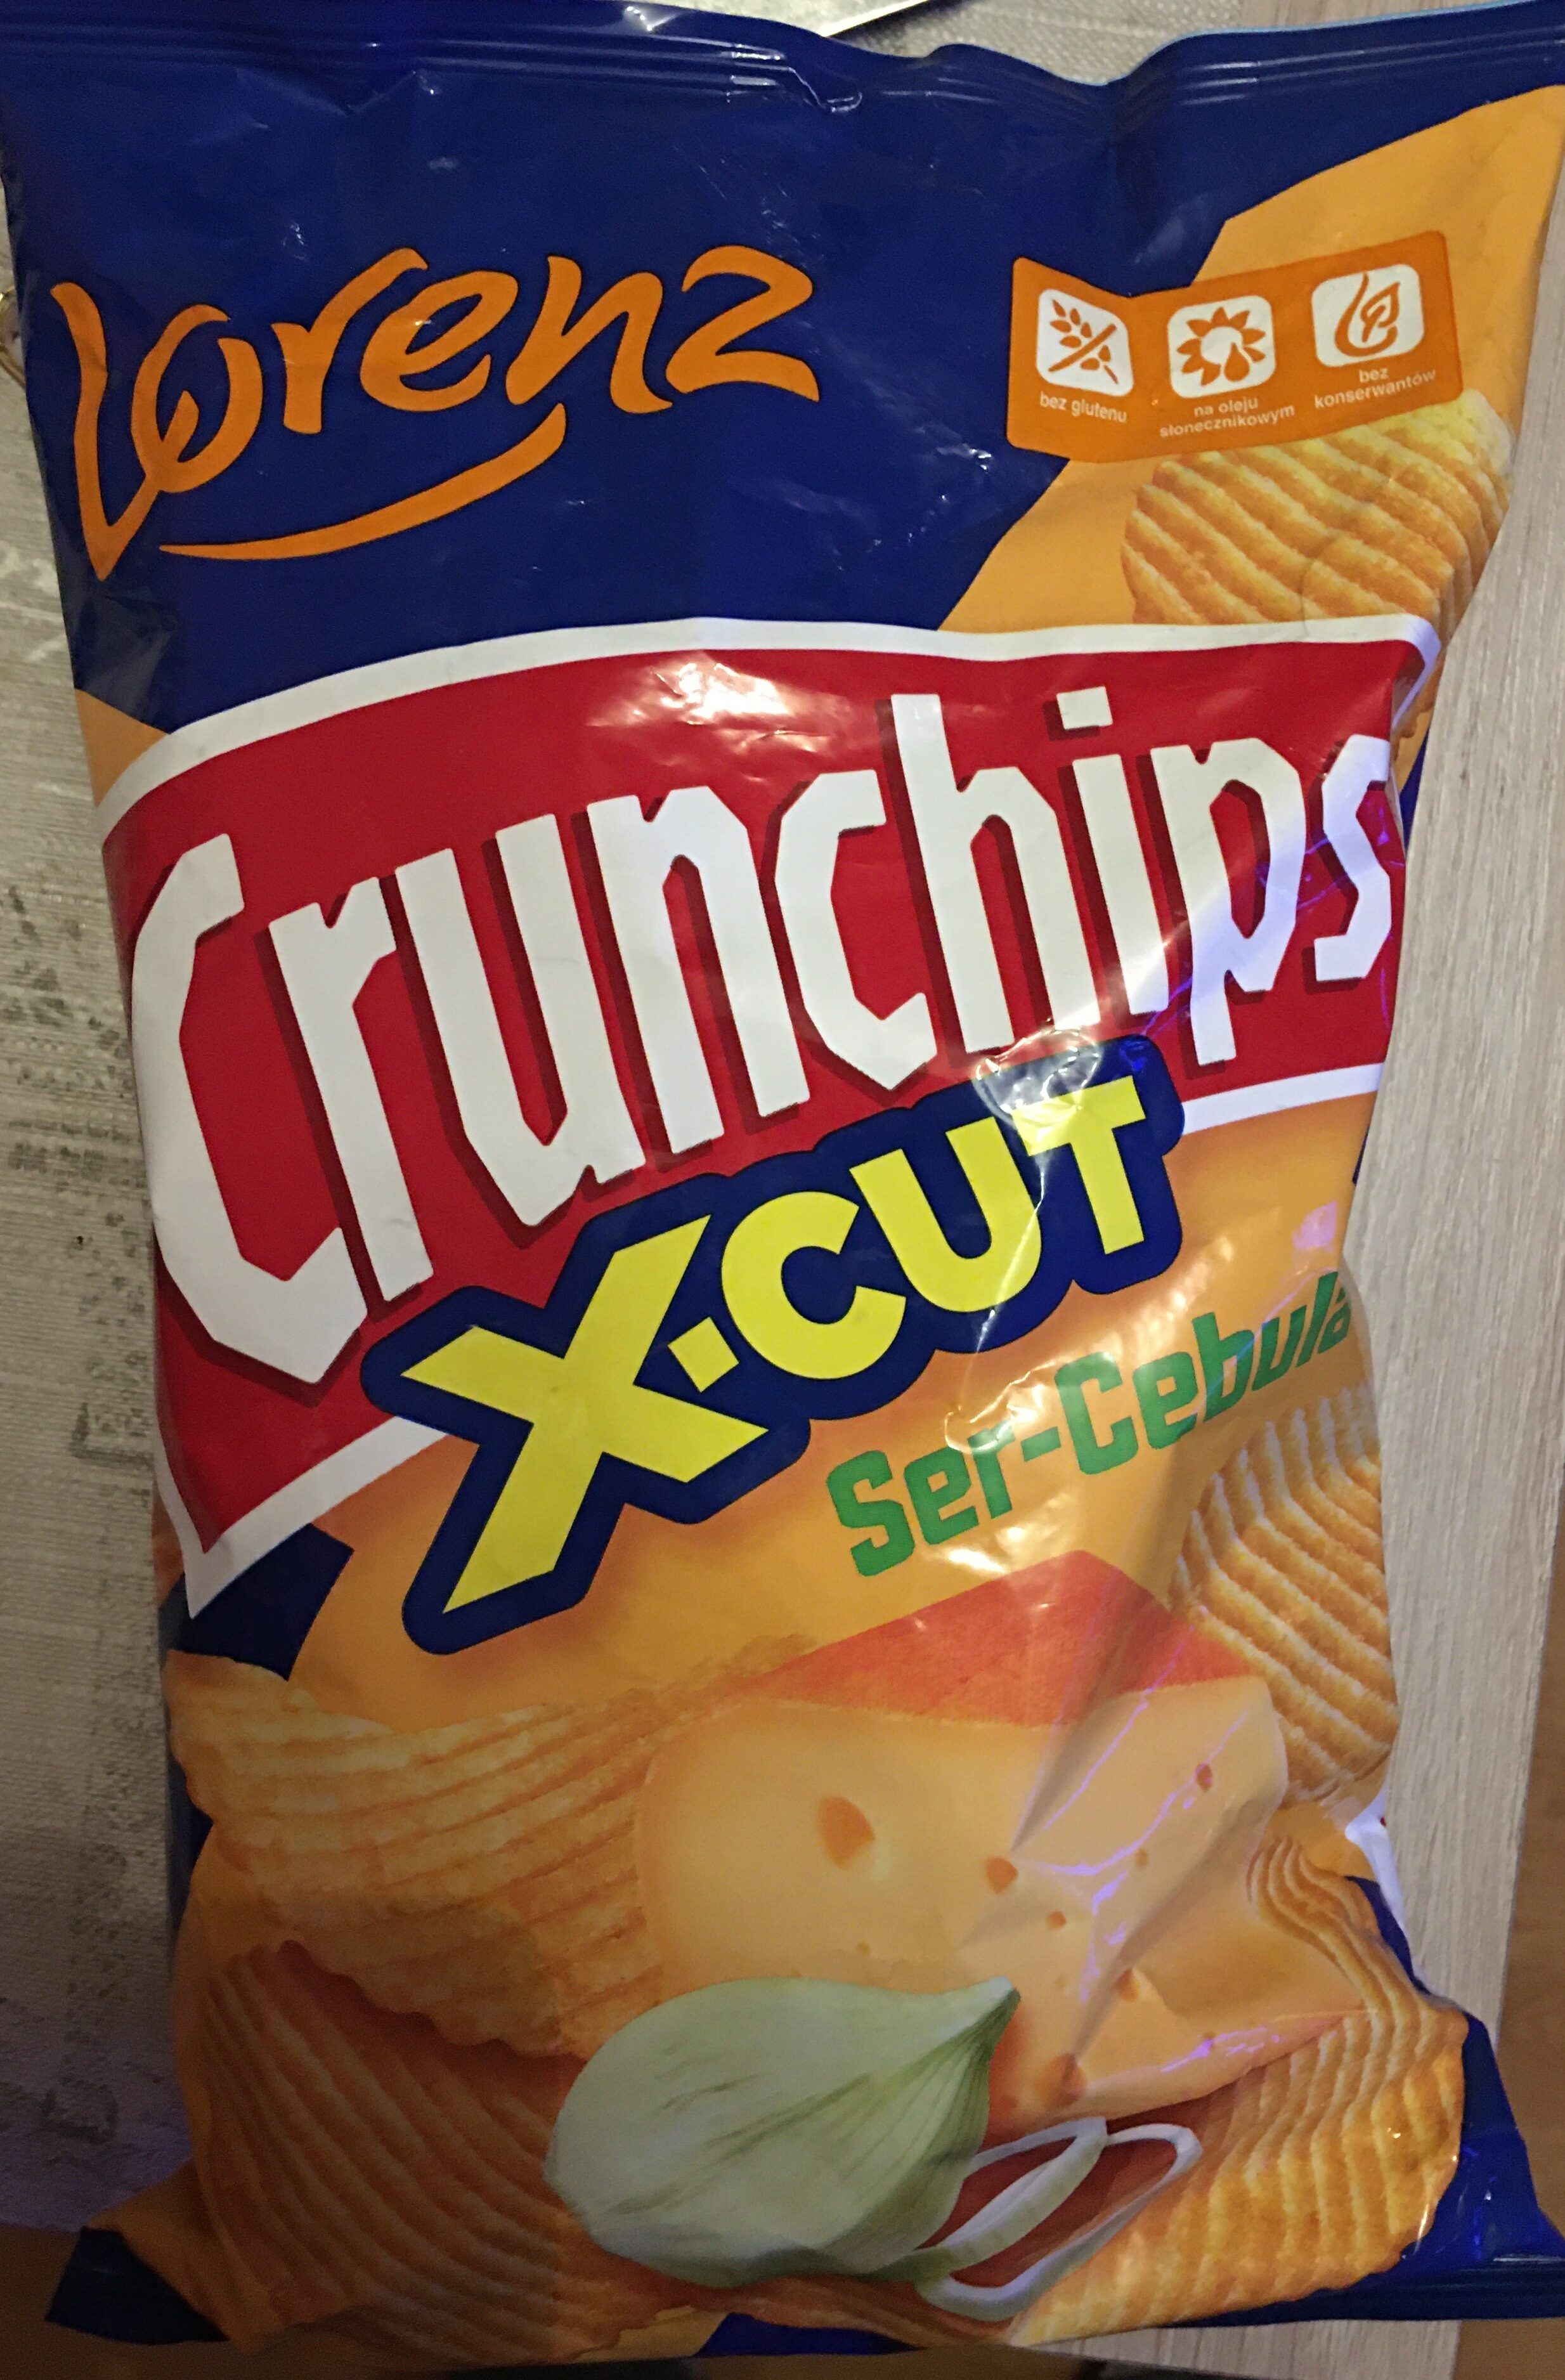 Crunchips X-CUT Ser-Cebula - Produkt